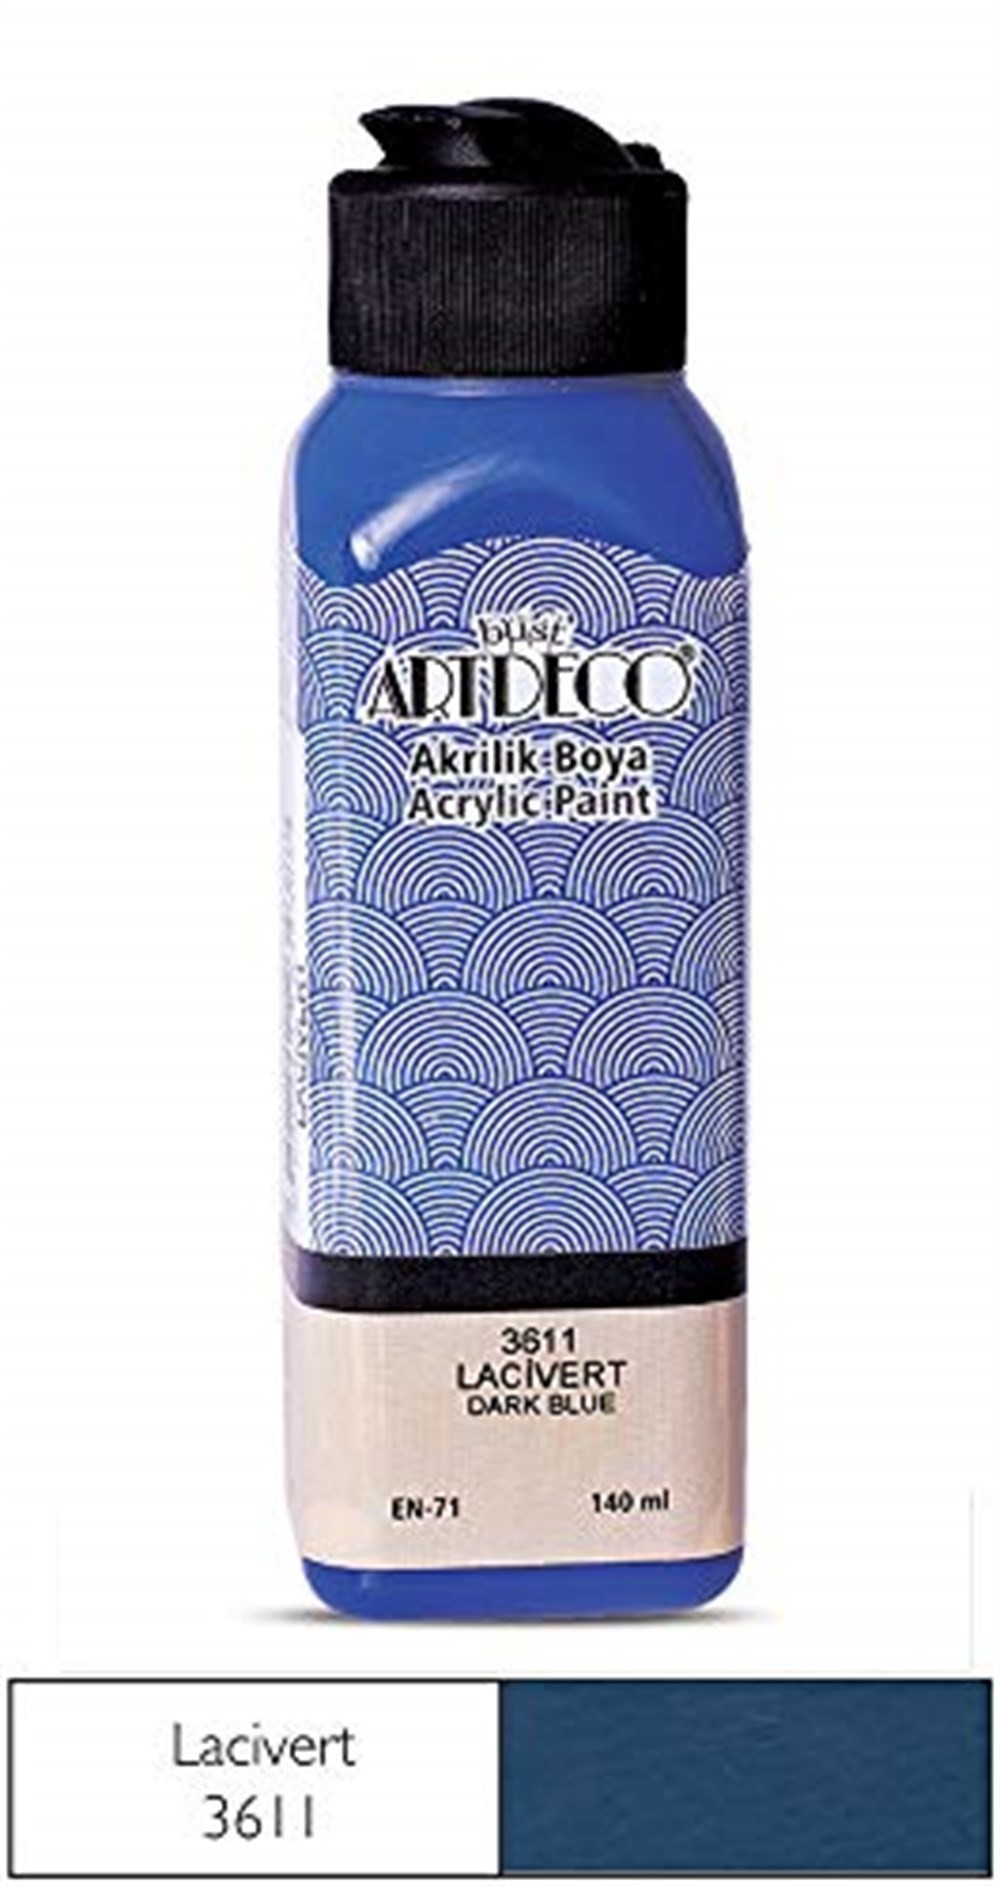 Artdeco Akrilik Boya 140 ml Lacivert 3611